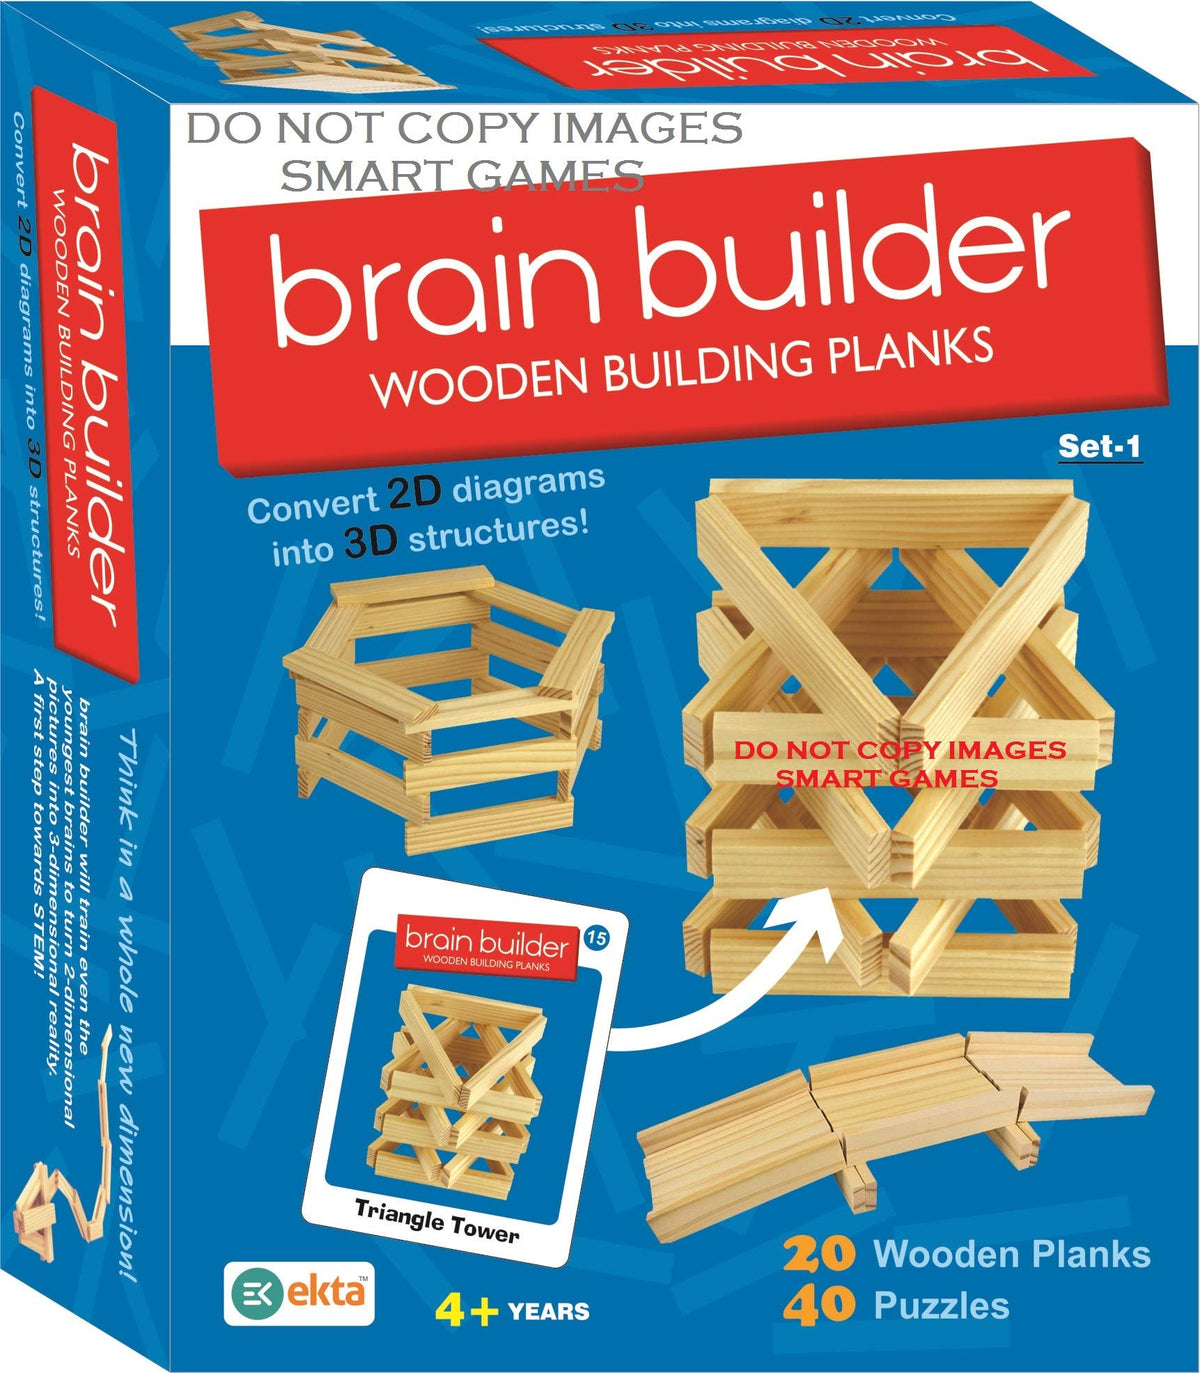 EKTA brain builder wooden building planks (set-1)- Multi color, 36 Pcs